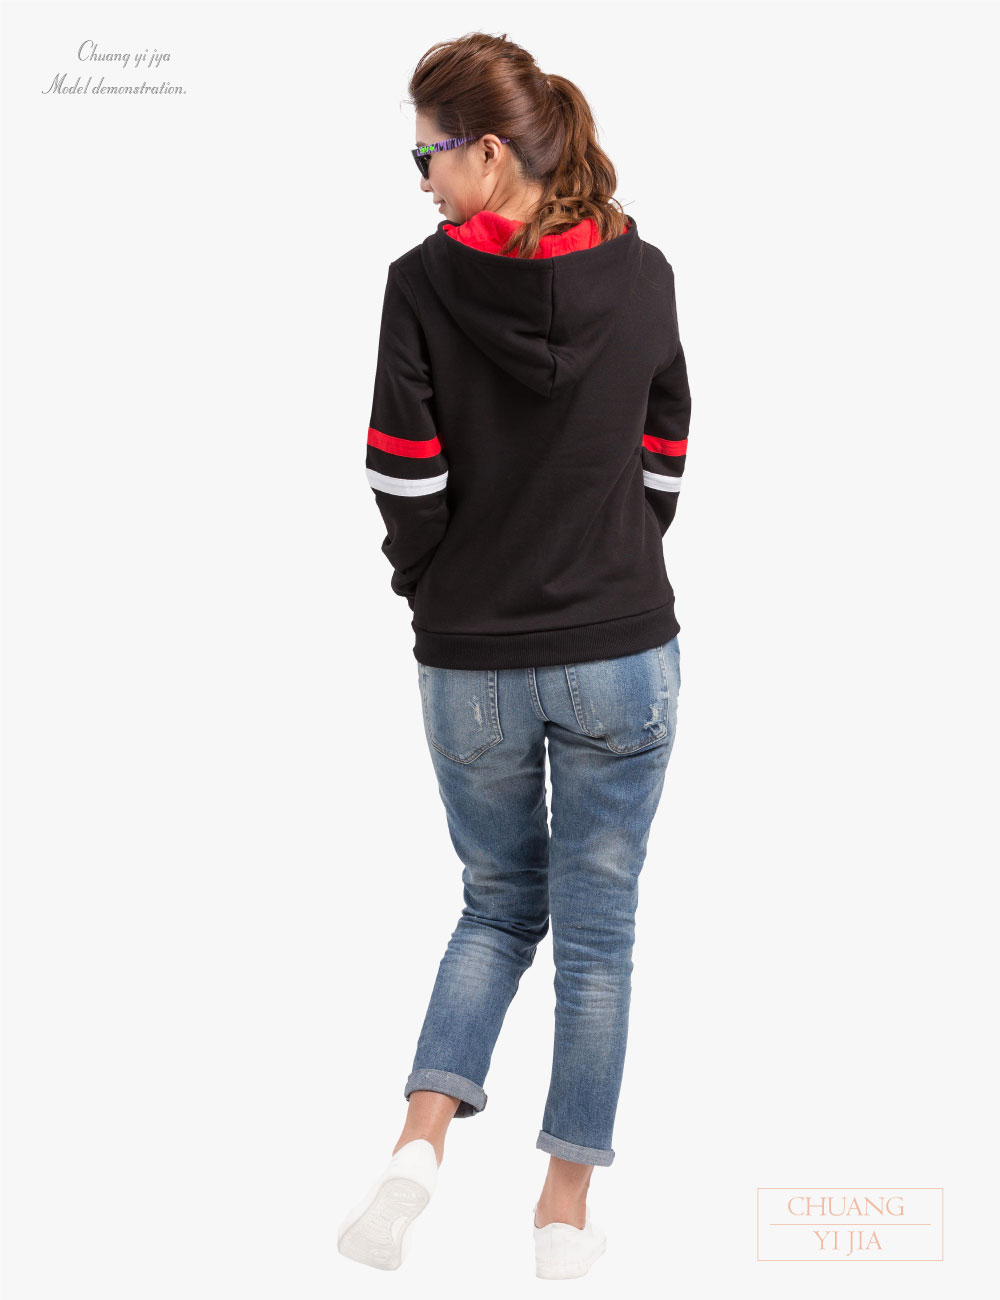 創e家團體服-帽T外套 訂製 雙線款 黑配白/紅-背面